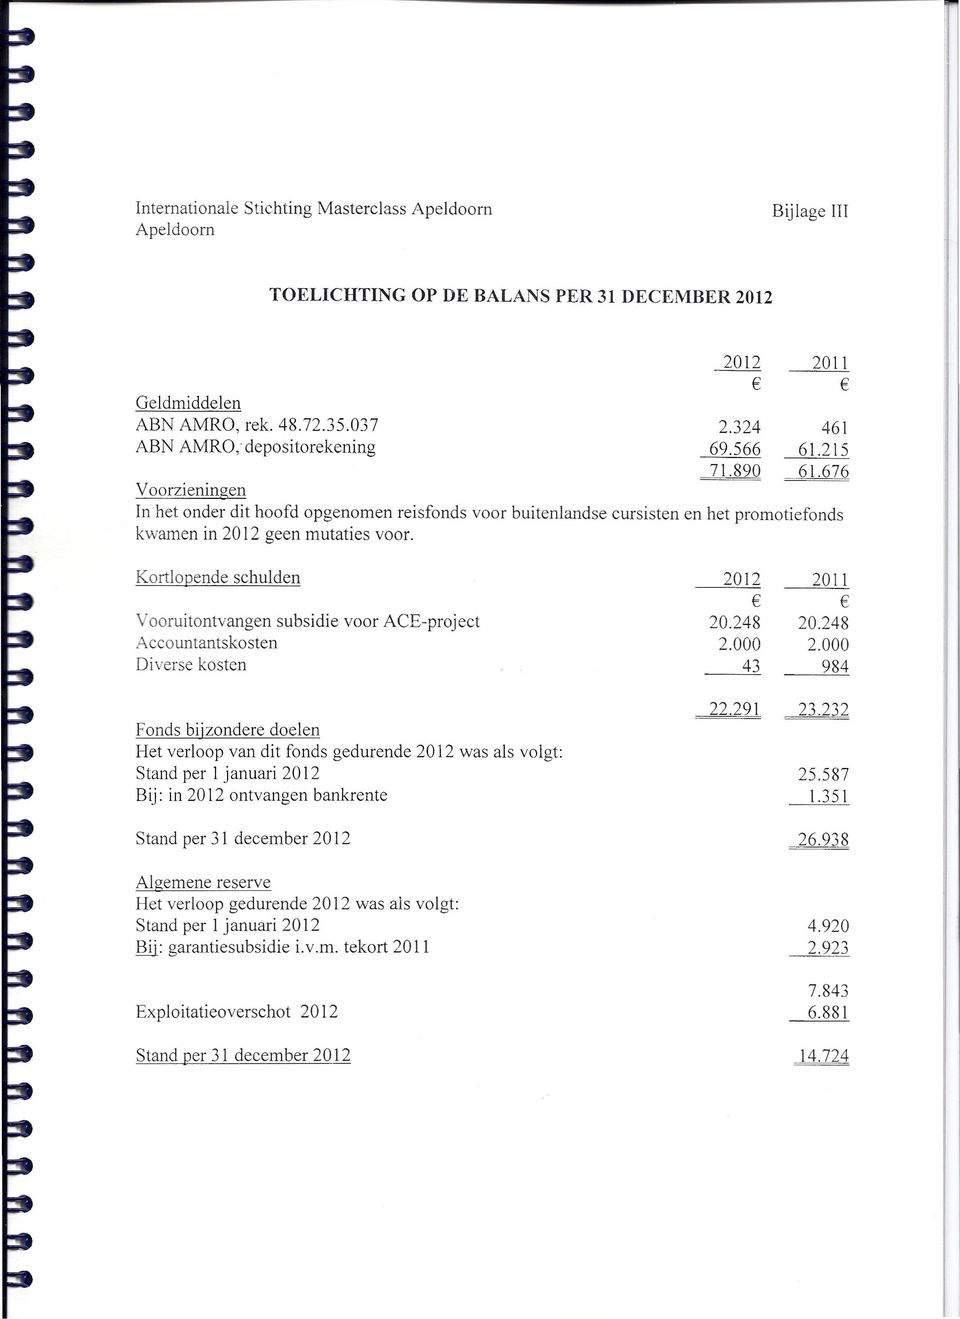 Kortlopende schulden 2012 ooruitontvangen subsidie voor ACE-project 20.248 Accountantskosten 2.000 Diverse kosten 43 2011 20.248 2.